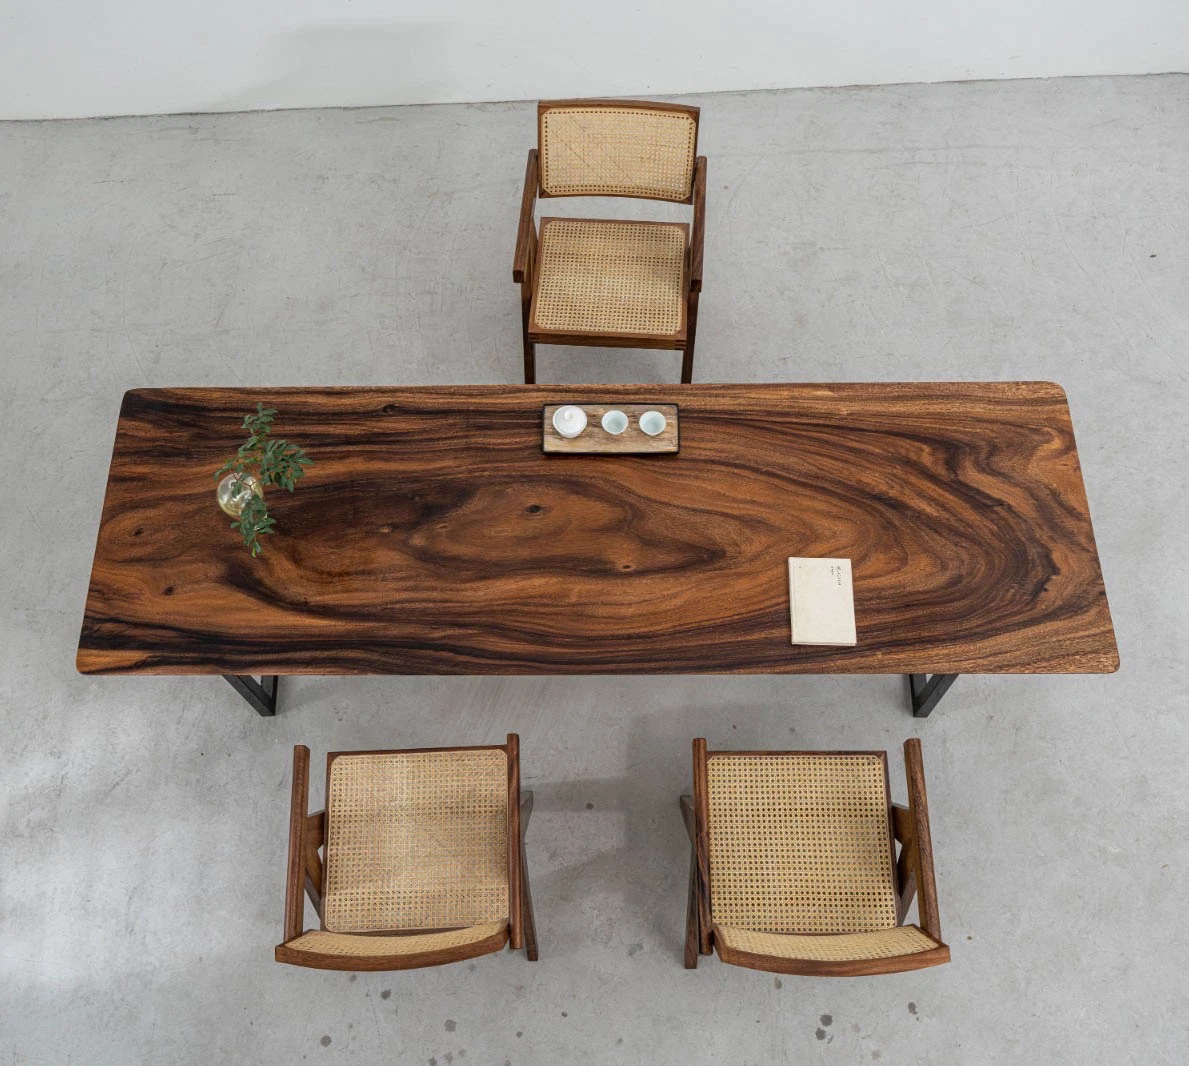 Vendre une table de conférence en bois en usine